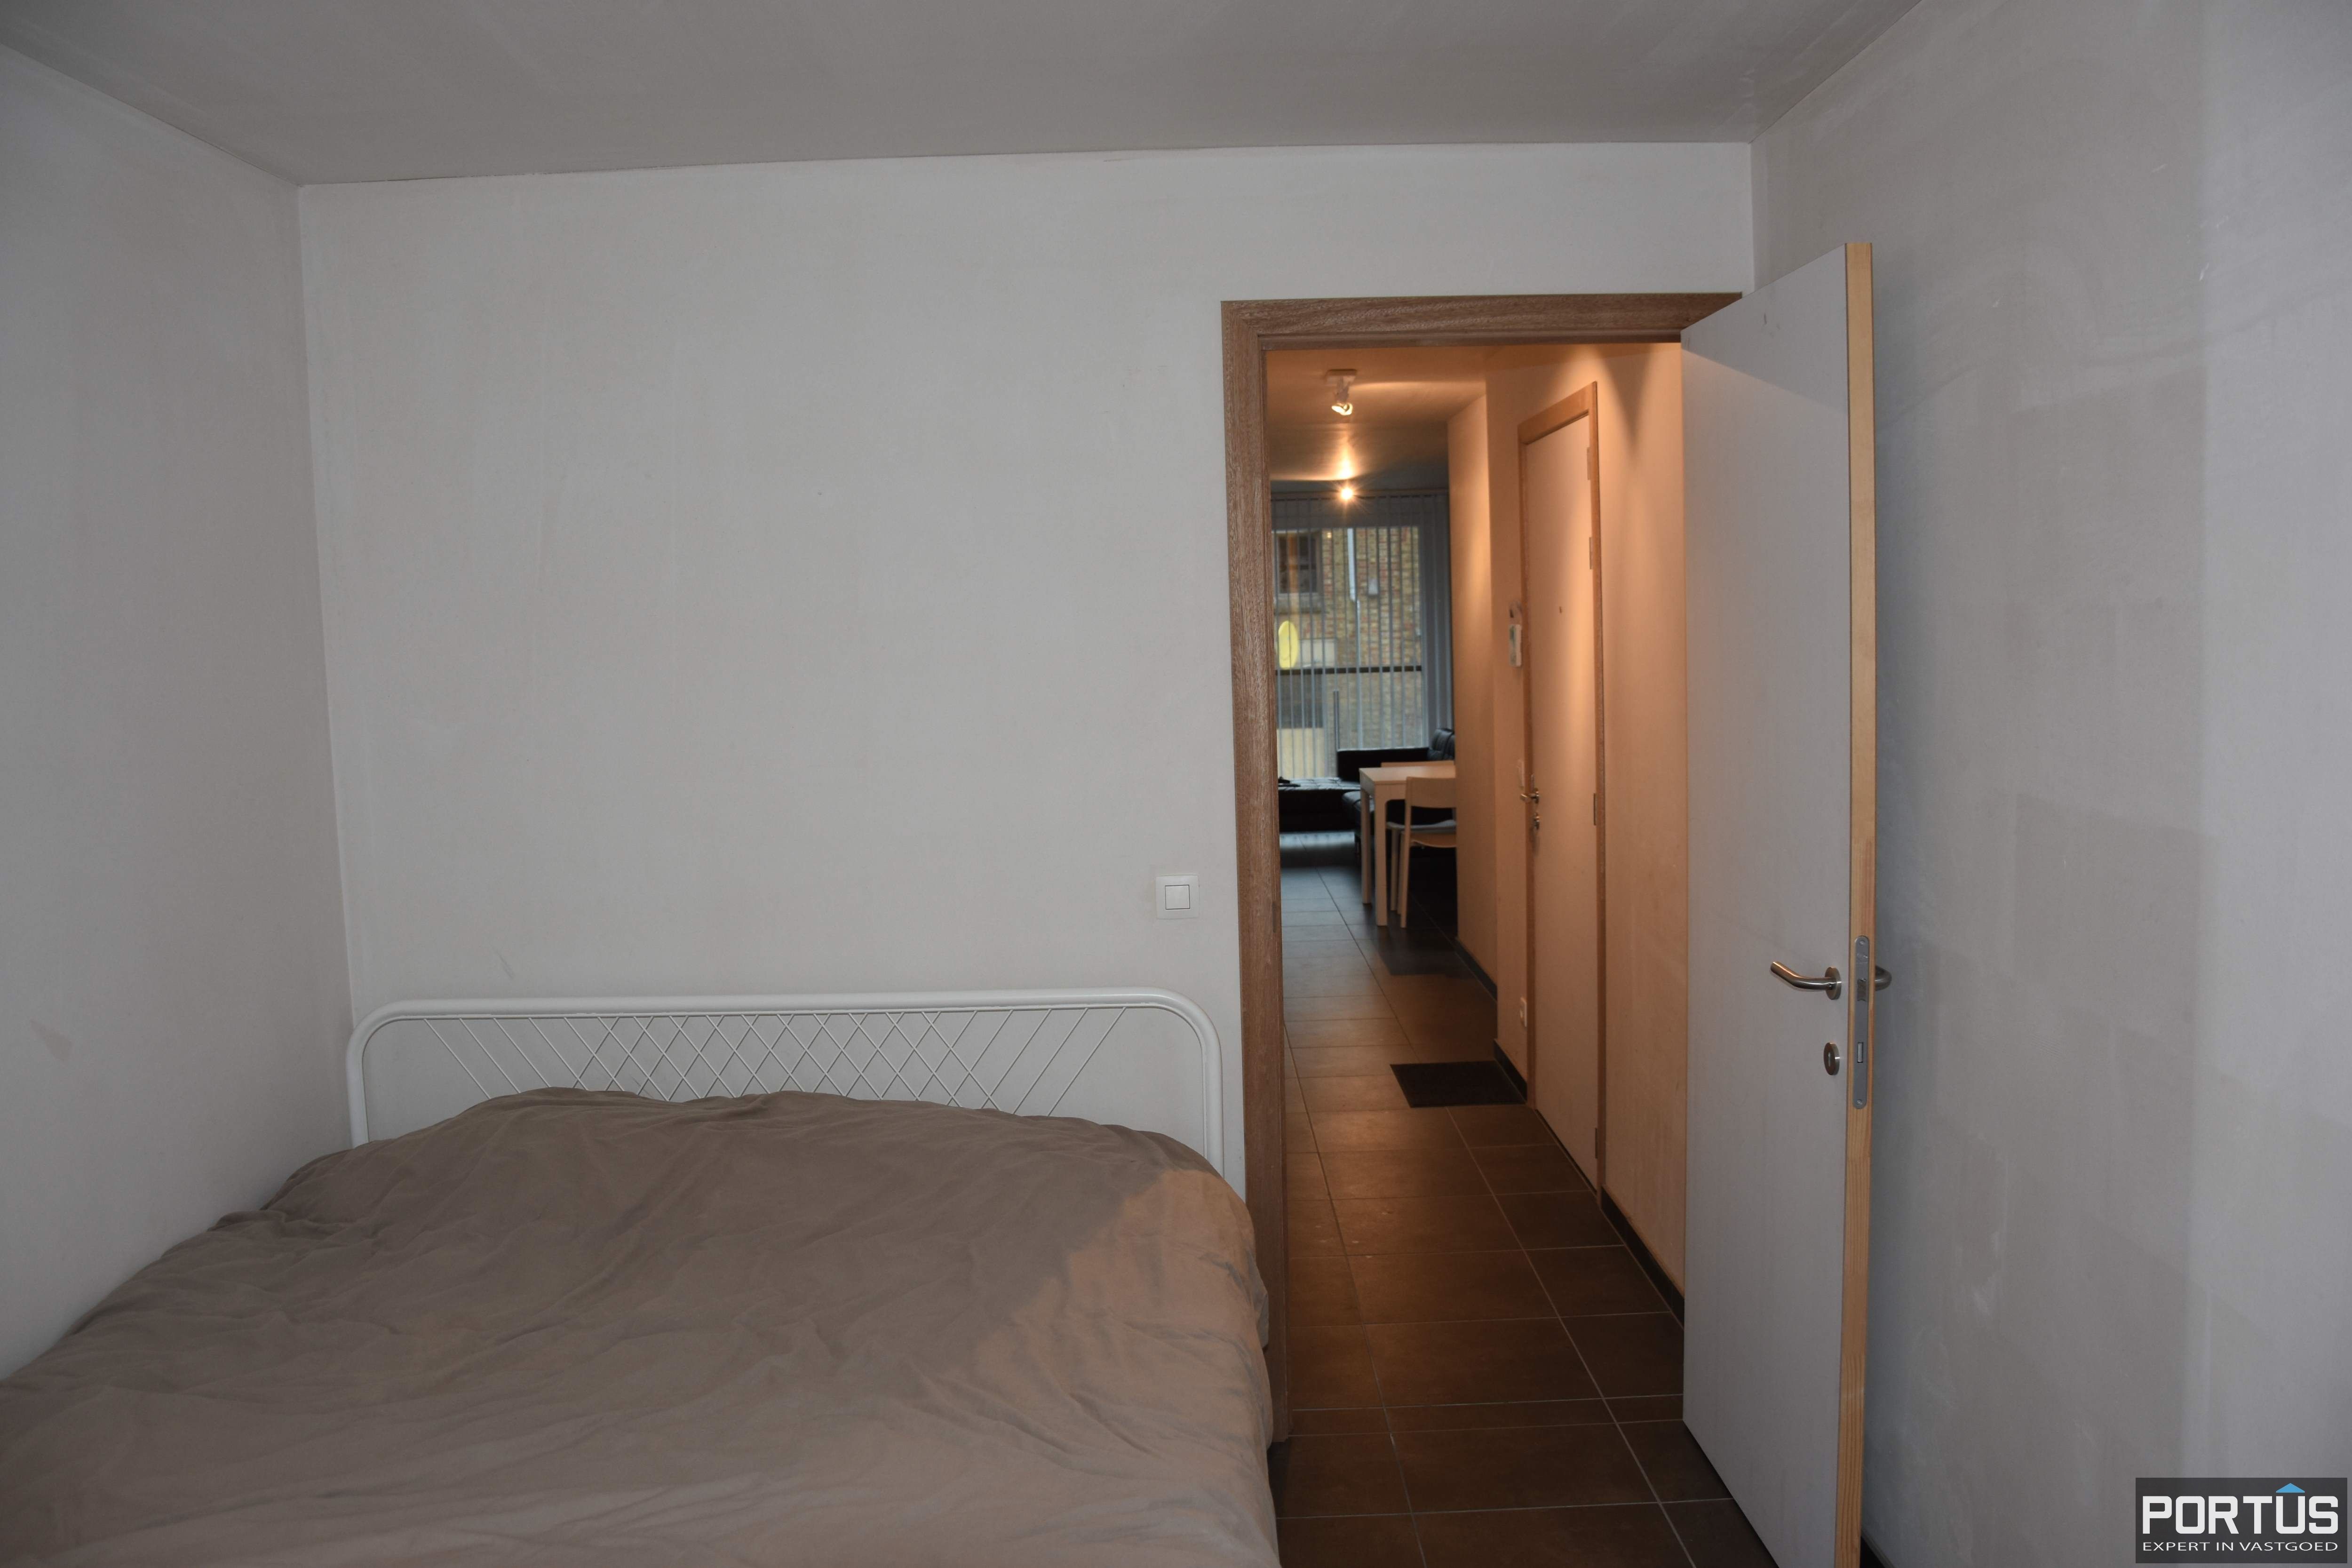 Appartement met 1 slaapkamer te huur te Lombardsijde - 17575